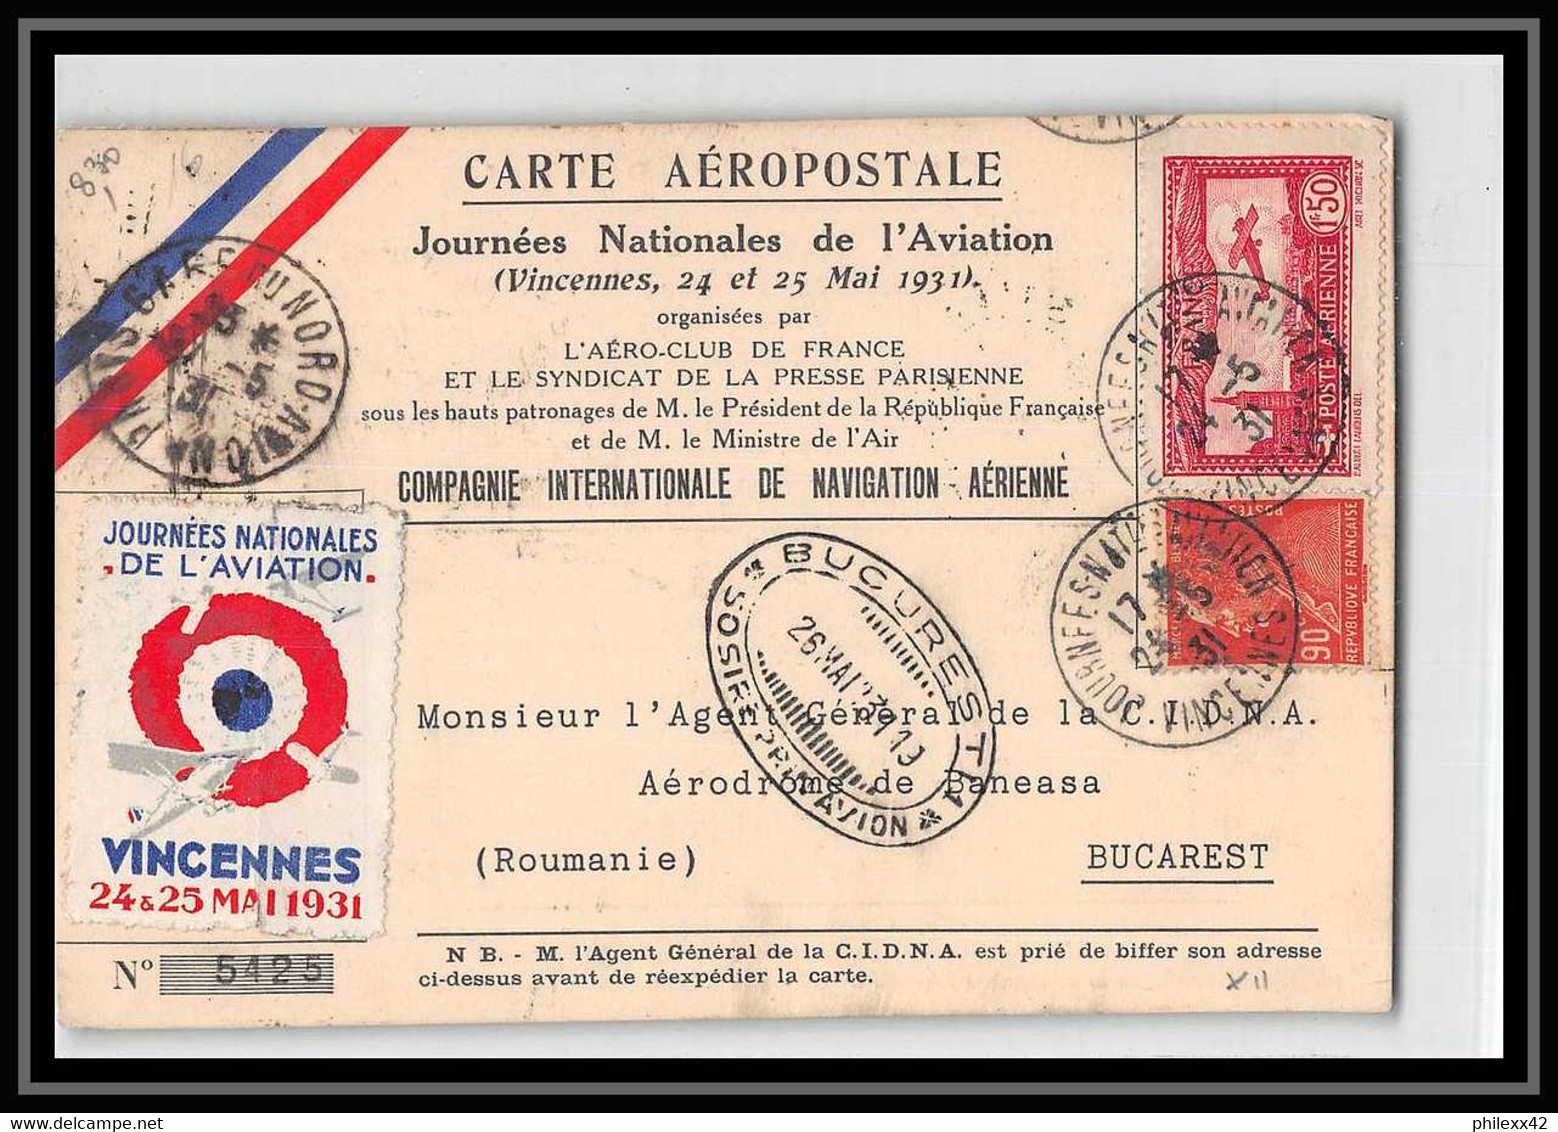 41901 Vincennes 1931 France Journees Nationales De L'Aviation PA N°5 Poste Aérienne Airmail Carte Aeropostale Vignette - 1927-1959 Lettres & Documents